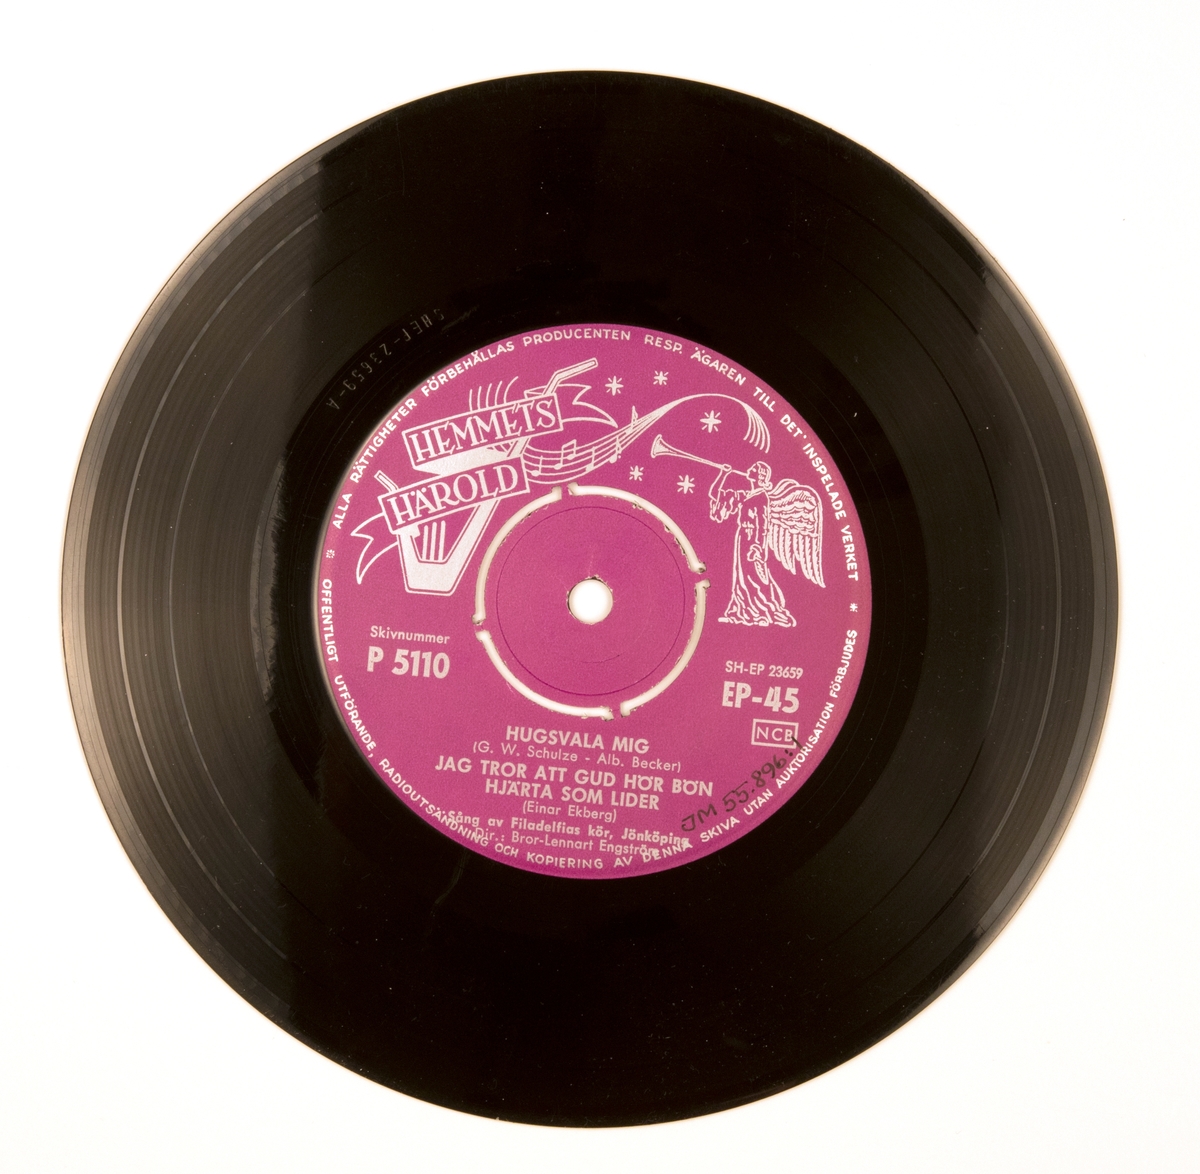 EP-skiva av svart vinyl med lila pappersetikett med silverfärgad tryckt text, i omslag av blankt papper. Omslaget är tryckt i färgerna rosa, svart och vitt. På framsidan ett svart-vitt fotografi av sångkören med dirigenten framför dem. Baksidan innehåller en förteckning med skivbolagets senaste skivor och tryckt text.

JM 55896:1, EP-siva, Hemmets Härold, P 5110, EP-45:

1. Hugsvala mig (G. W. Schulze - Alb. Becker)
2. Jag tror att Gud hör bön 
3. Hjärtat lider (Einar Ekberg)
Sång av Filadelfias kör, Jönköping
Dir.: Bror-Lennart Engström

1. Ära ske Gud (M.Vulpius)
2. När får jag se dig (Valdemar Söderholm)
3. Evighetsvarelsen (Anders Frostenson - Karl-Erik Svedlund)
Sång av Filadelfias kör, Jönköping
Dir.: Bror-Lennart Engström

Text runt pappersetiketten:
"Alla rättigheter förbehållas producenten Resp. ägaren till det inspelade verket * Offentligt utförande, radioutsändning och kopiering av denna skiva utan auktorisation förbjudes"

JM 55896:2, Omslag
"Häroldens Tr., Sthlm 1959"